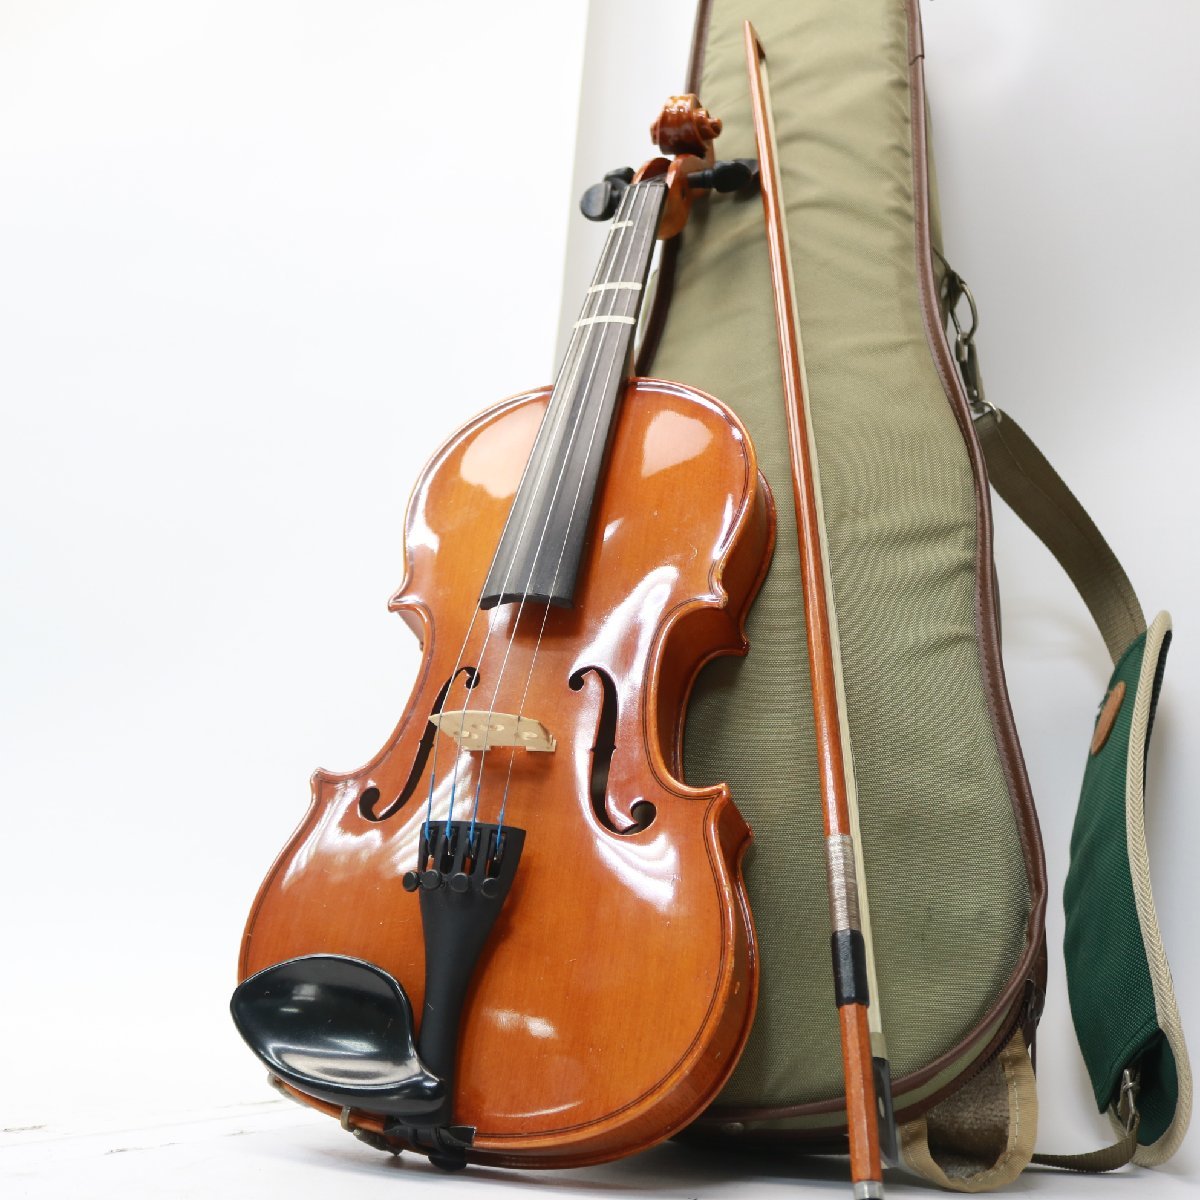 東京都世田谷区にて スズキバイオリン バイオリン No.330 Anno 1991  を出張買取させて頂きました。